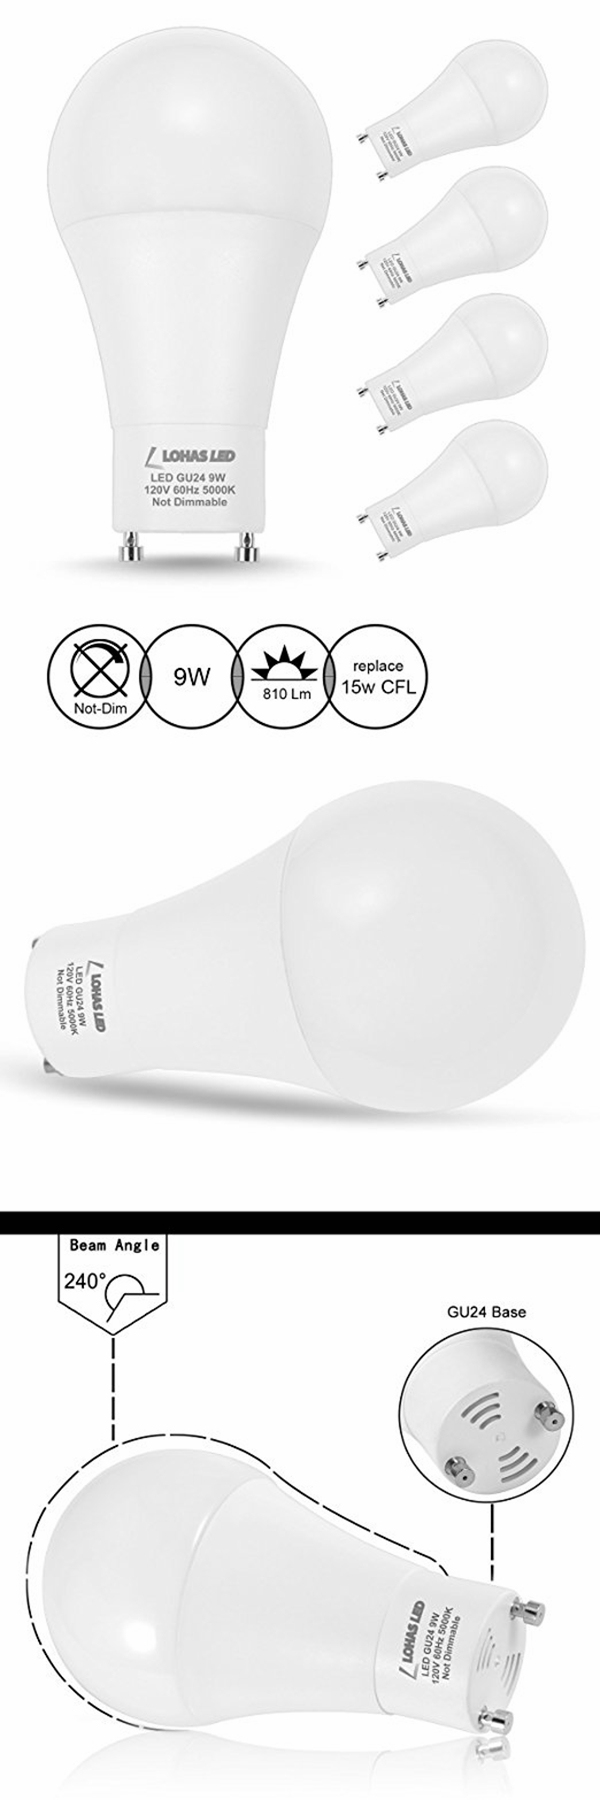 Lohas New 9W Gu24 LED Light Bulb with Natural White Light (5000K)